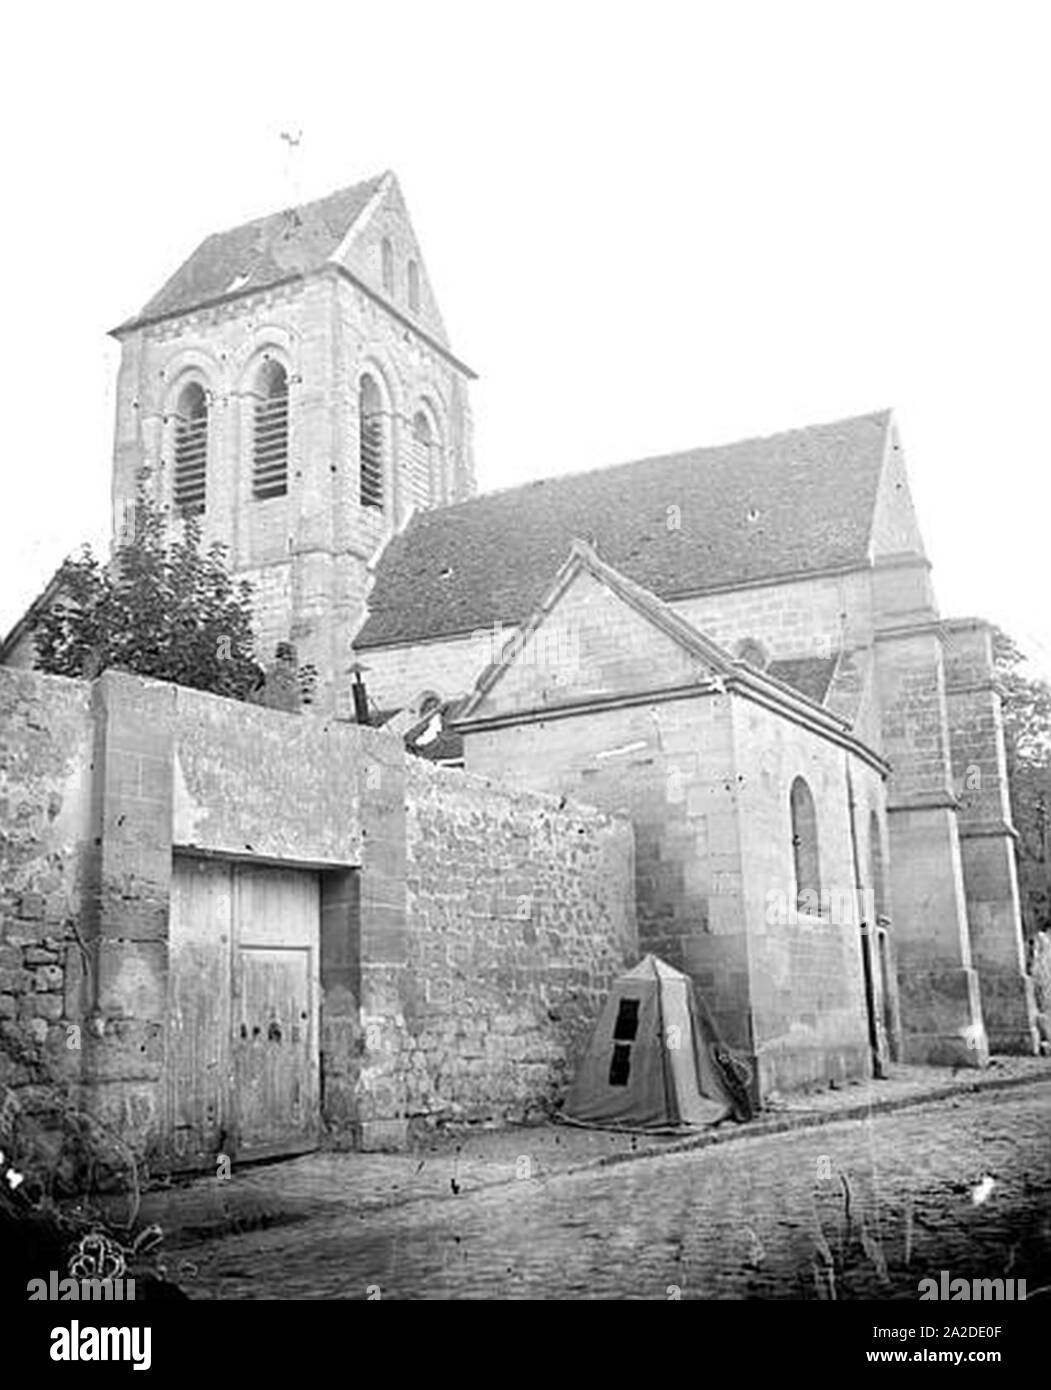 Eglise - Clocher - Saint-Ouen-l'Aumône - Médiathèque de l'architecture et du patrimoine - Stock Photo